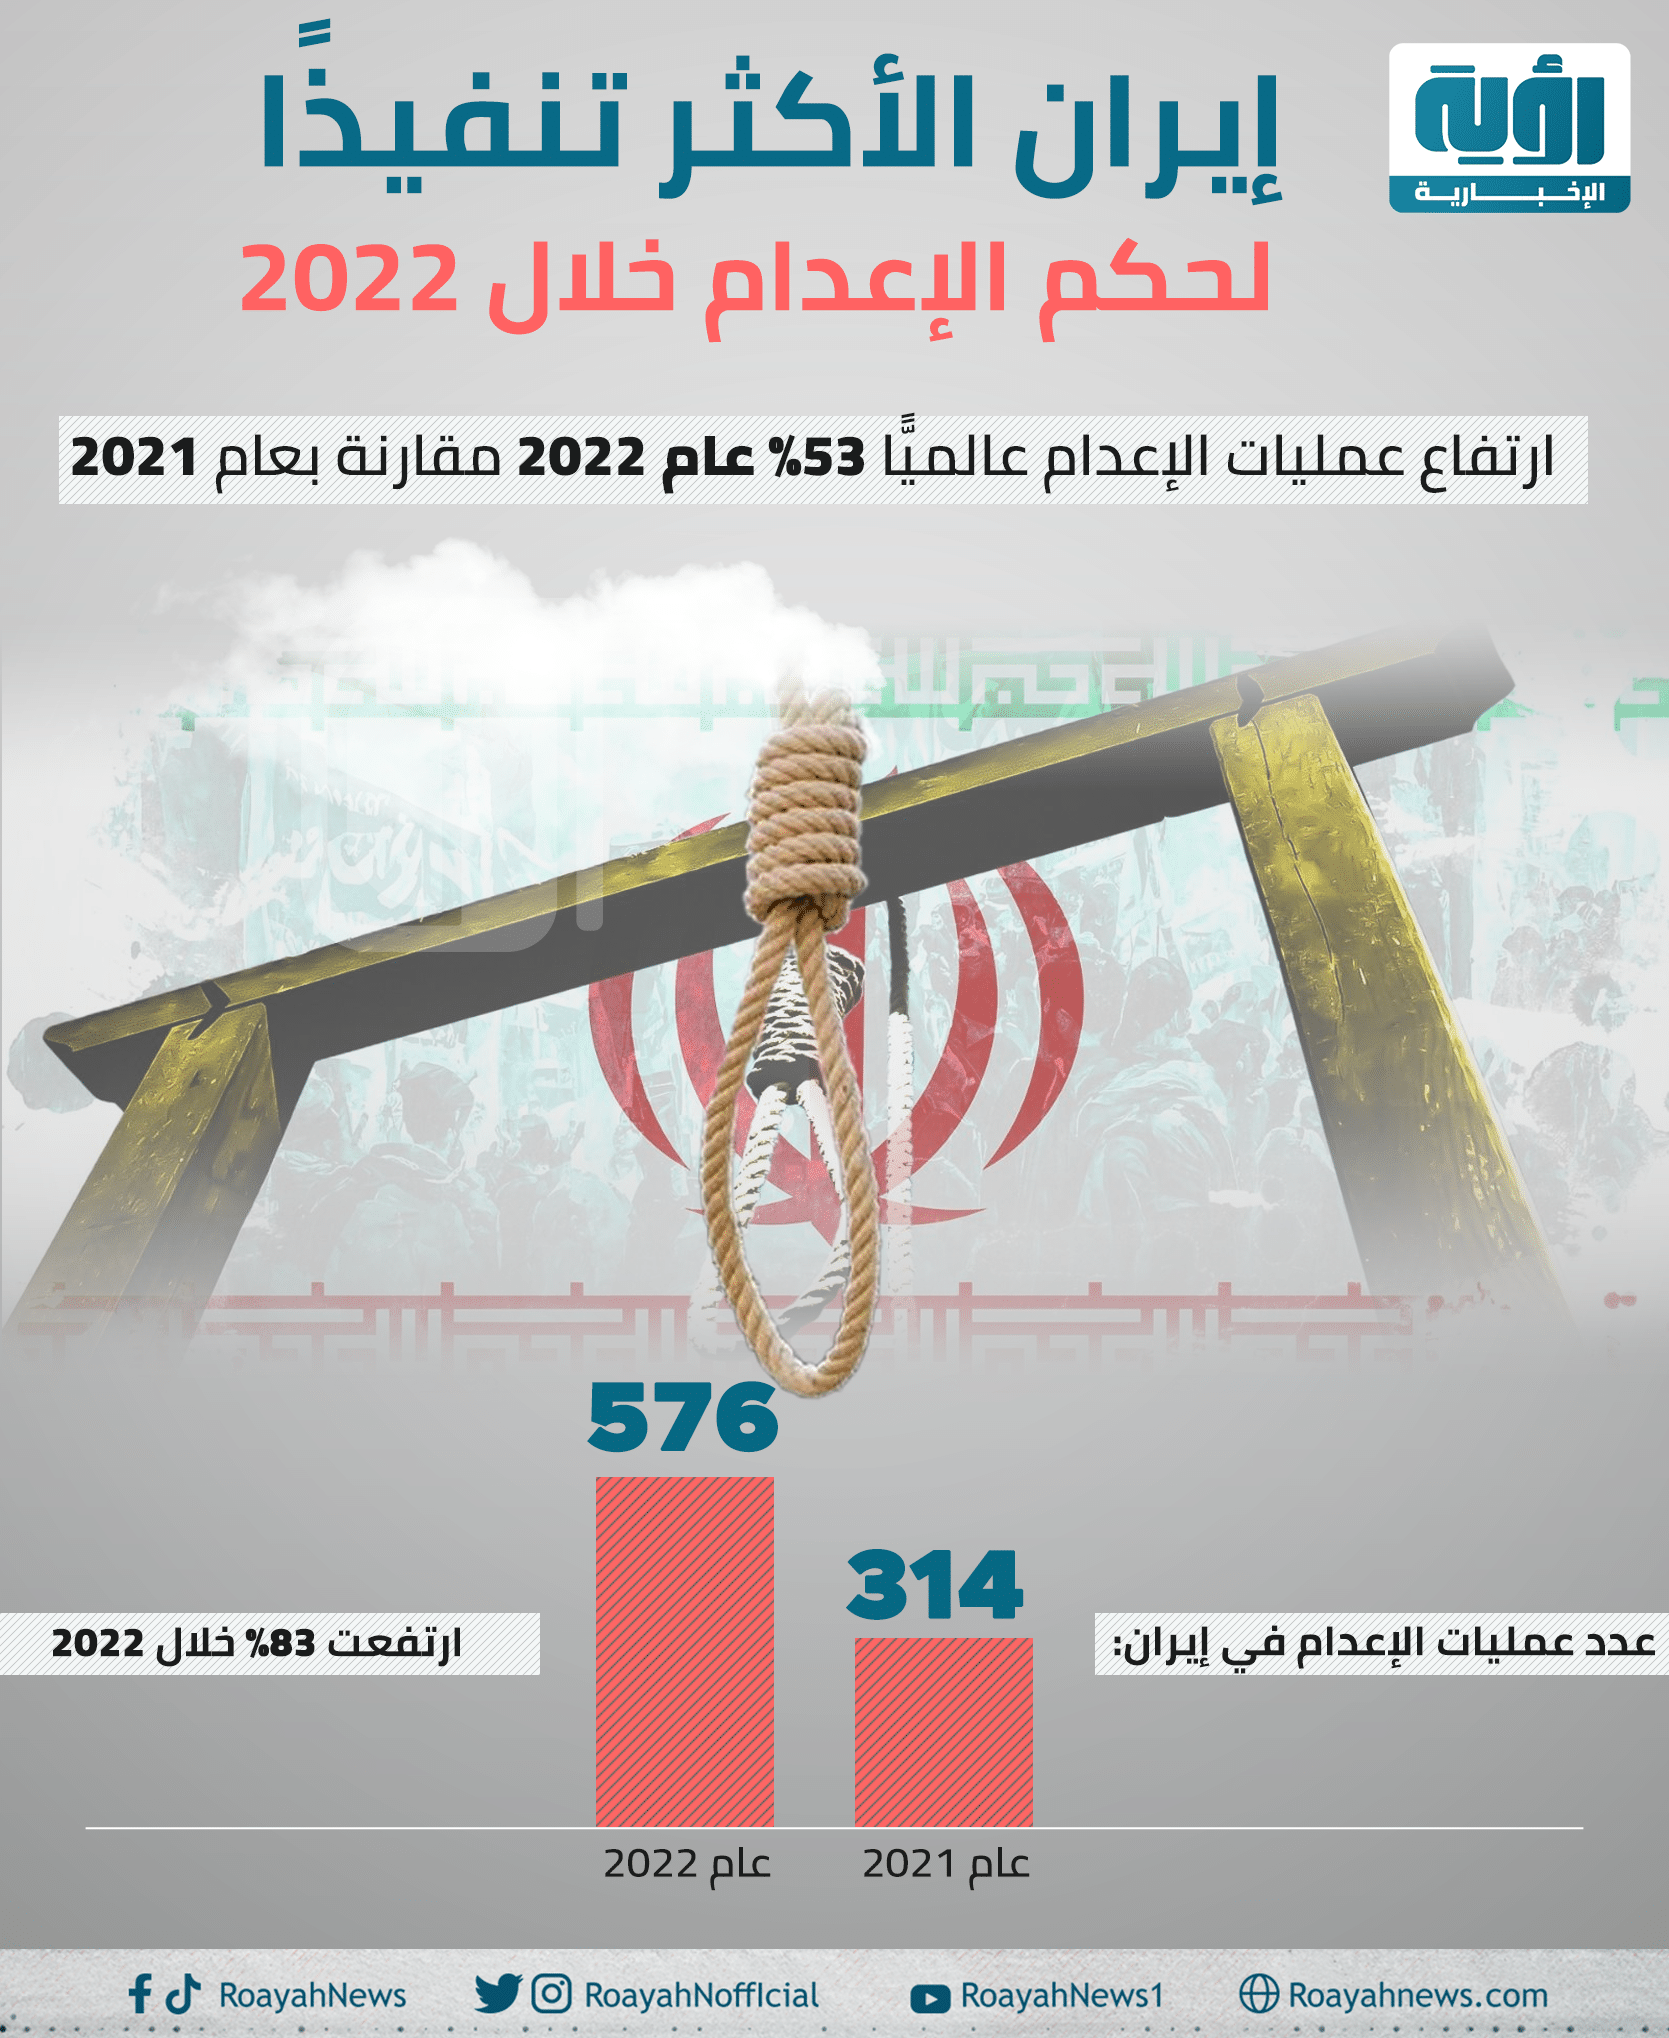 إيران الأكثر تنفيذا لحكم الإعدام خلال 2022